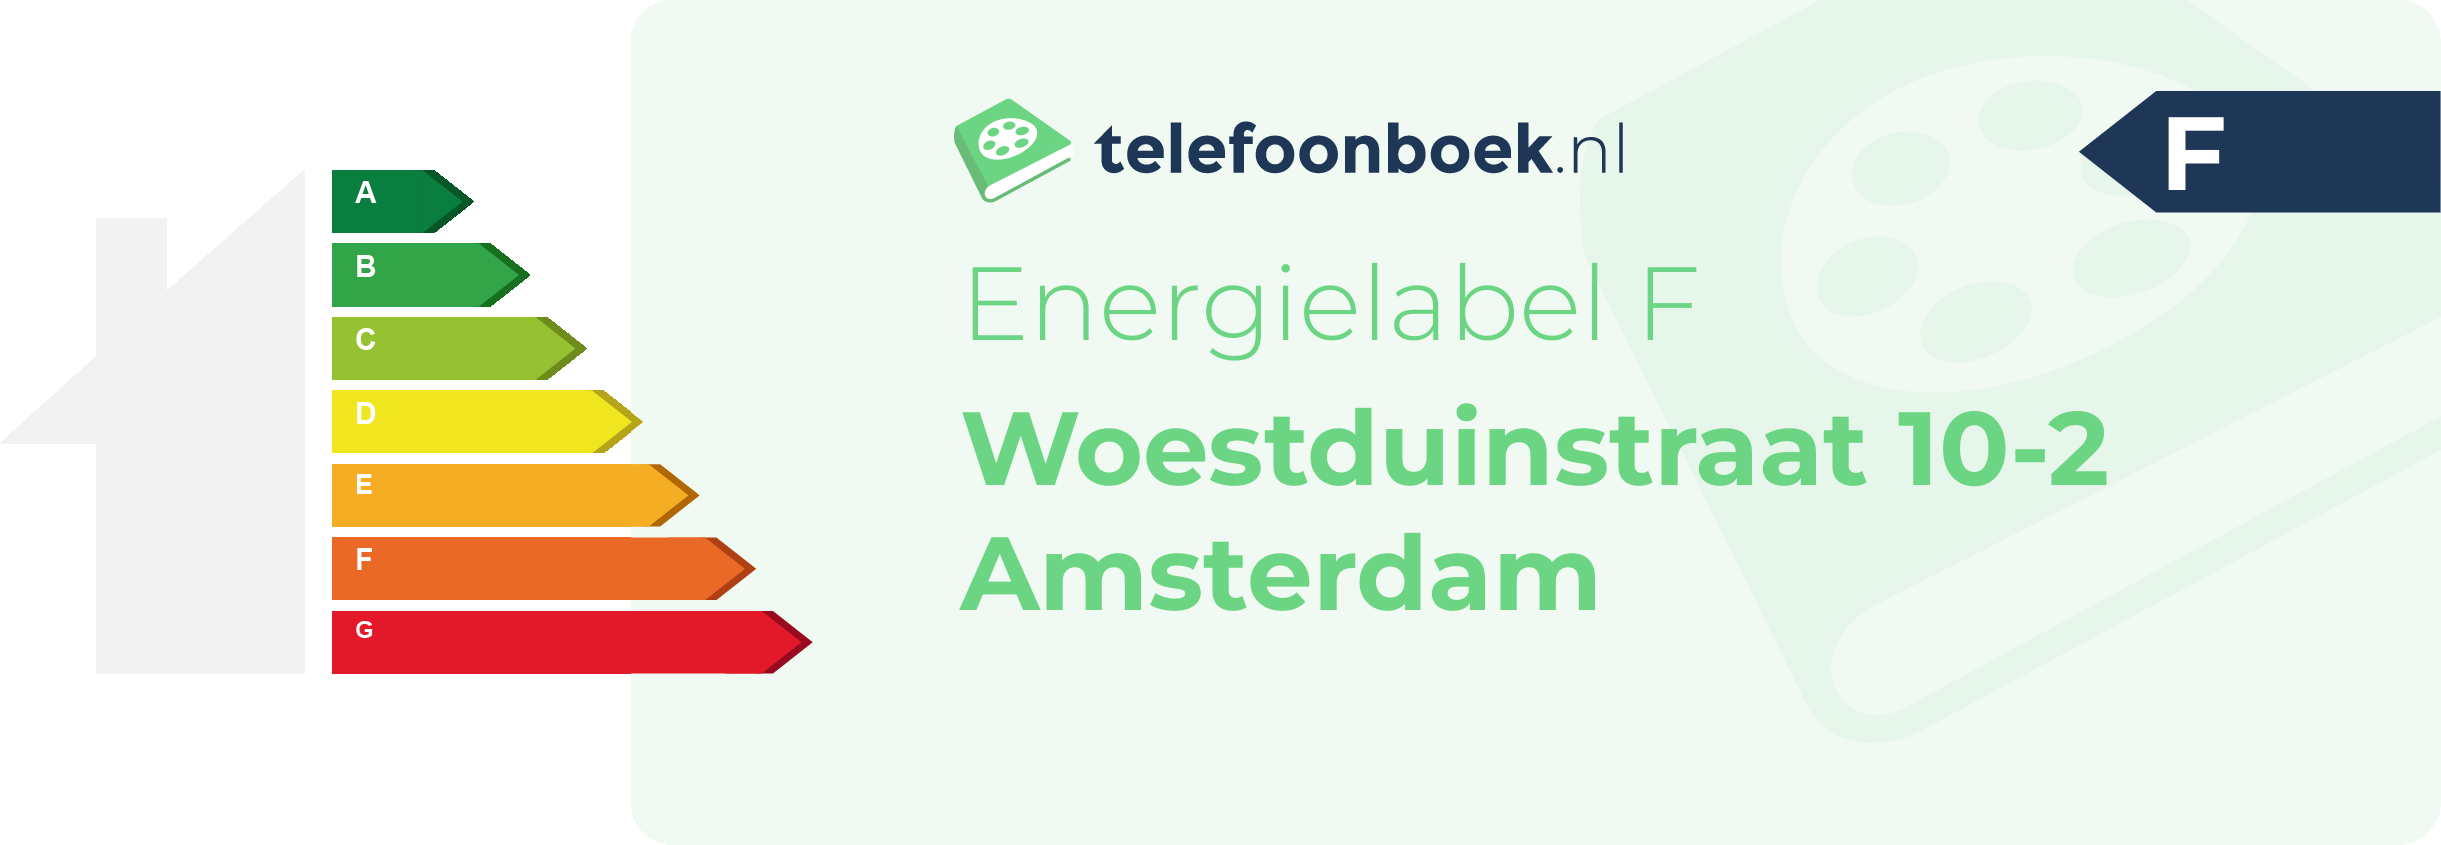 Energielabel Woestduinstraat 10-2 Amsterdam